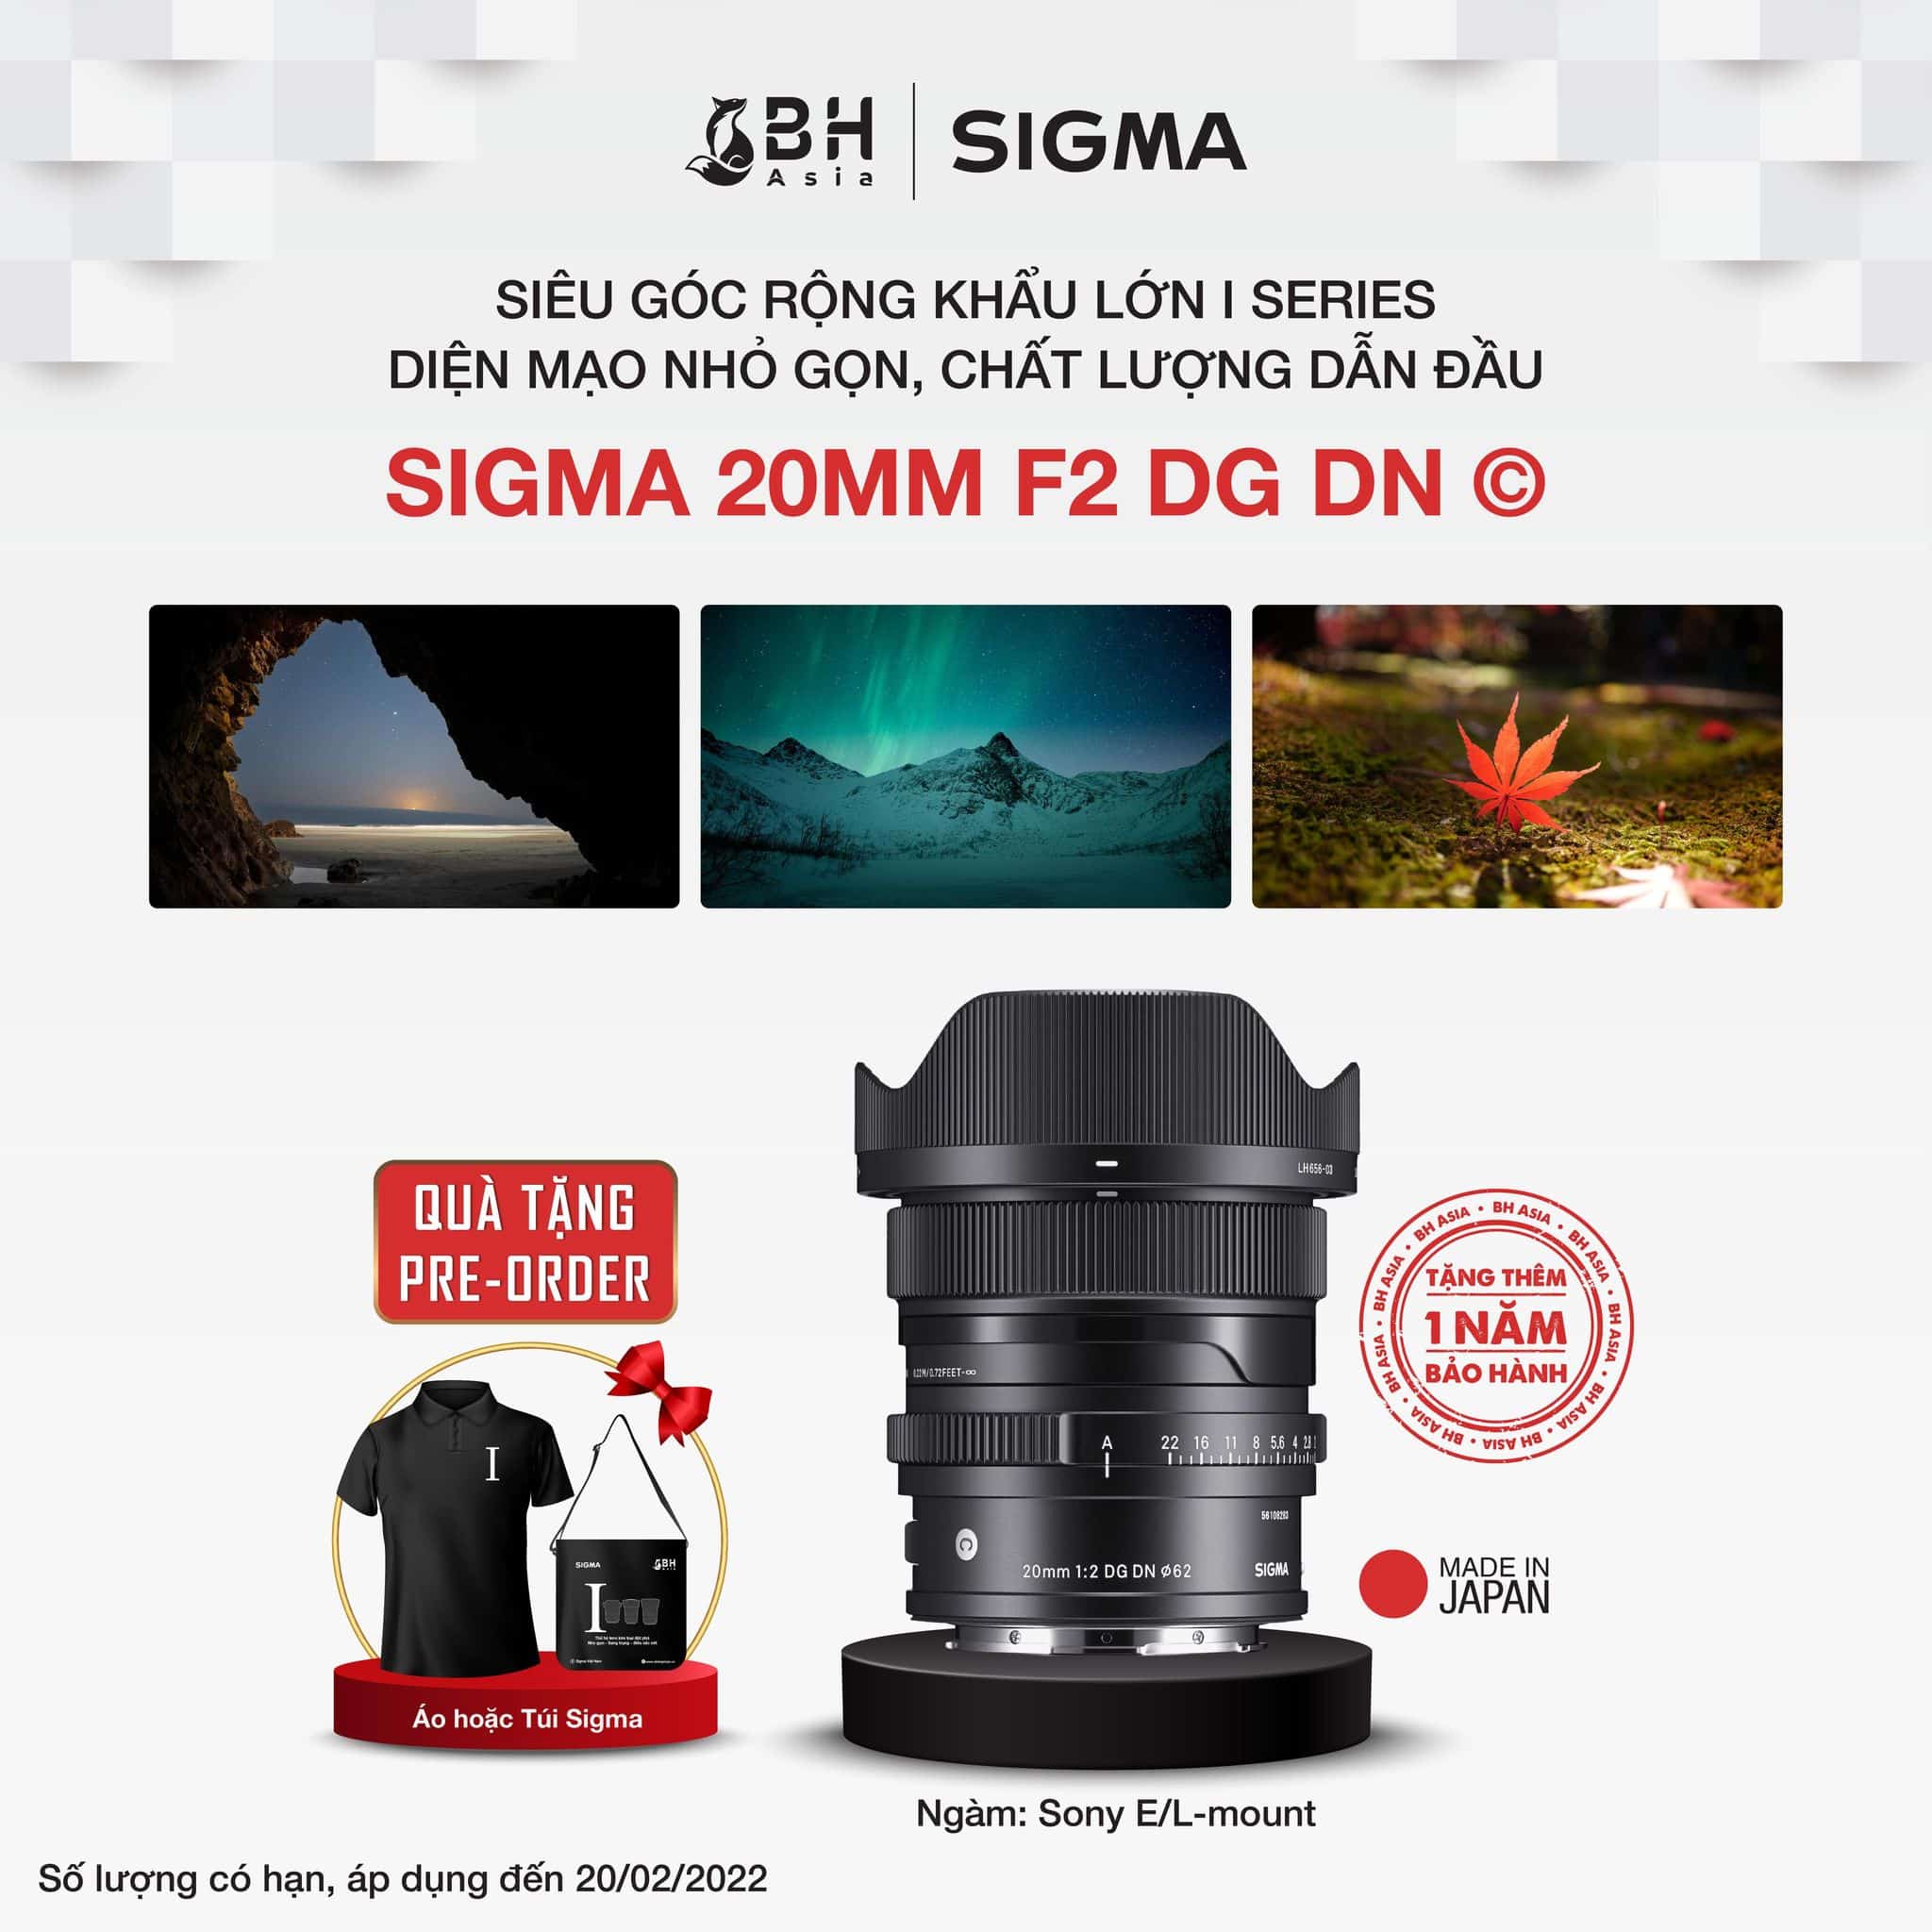 Đặt hàng trước ống kính Sigma 20mm F2 DG DN, nhận ngay các phần quà tặng pre order hấp dẫn